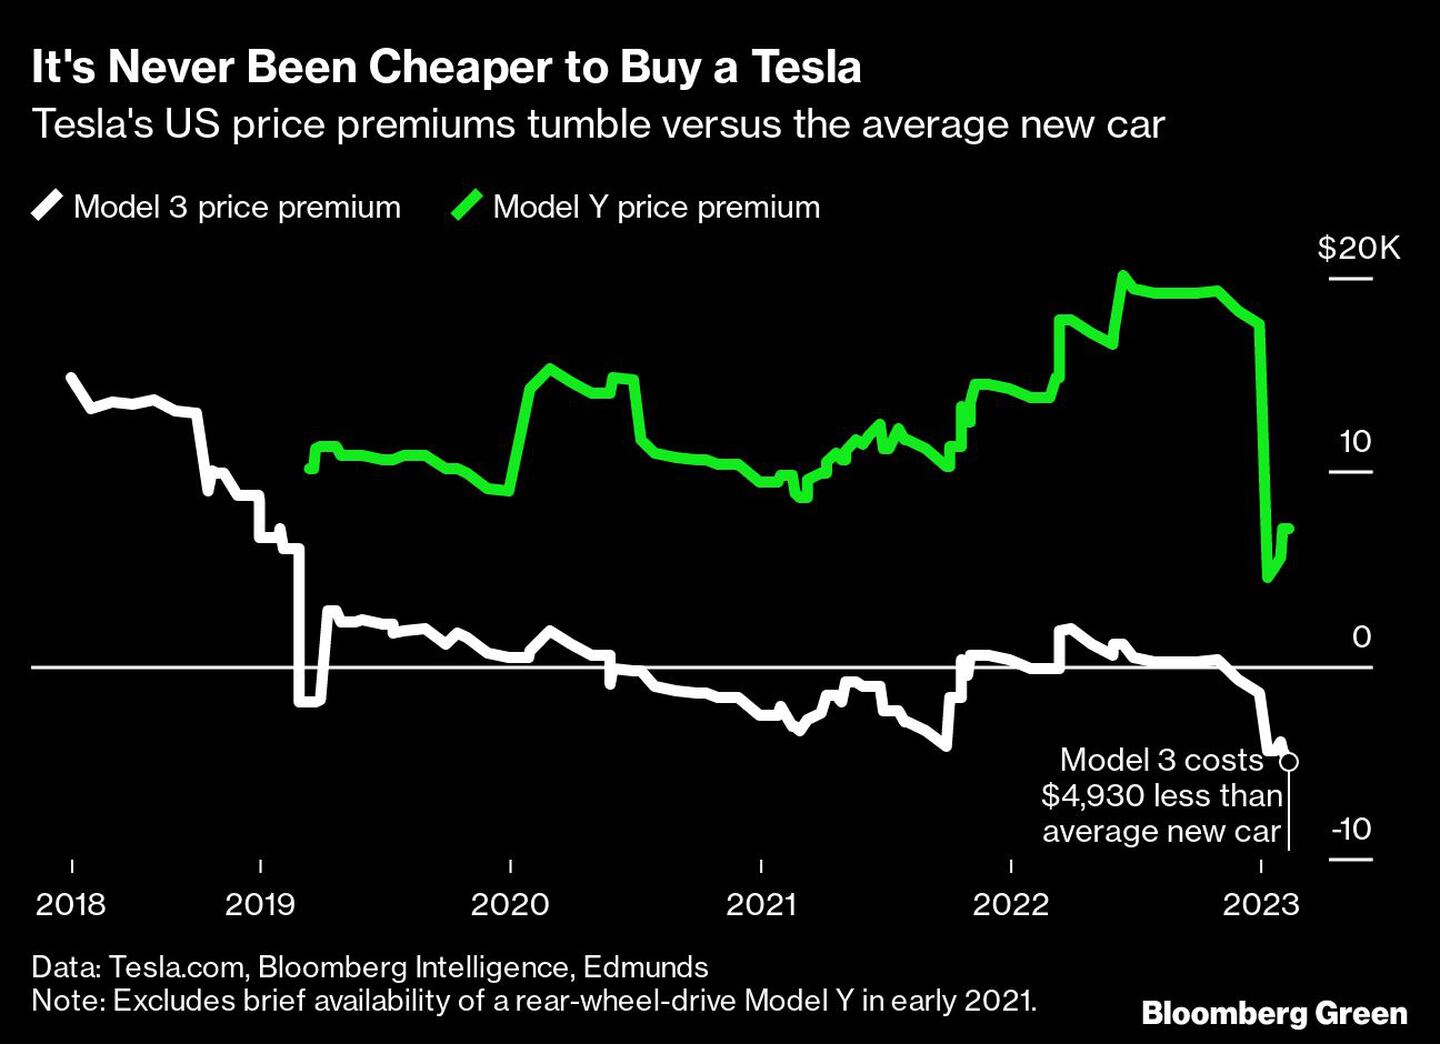 Los precios de Tesla en EE.UU. caen frente a la media de los coches nuevosdfd